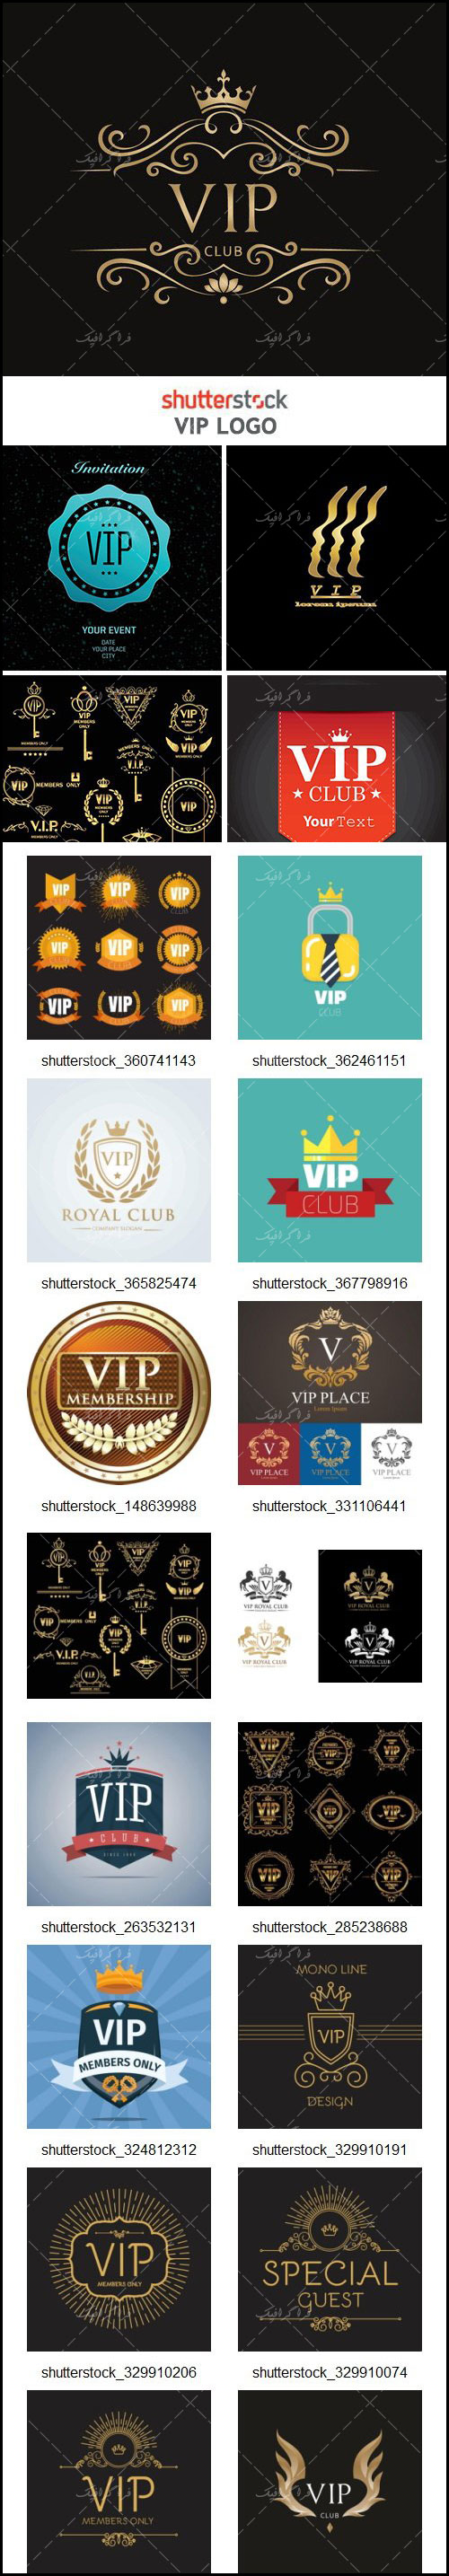 دانلود لوگو های وی آی پی - VIP Logos